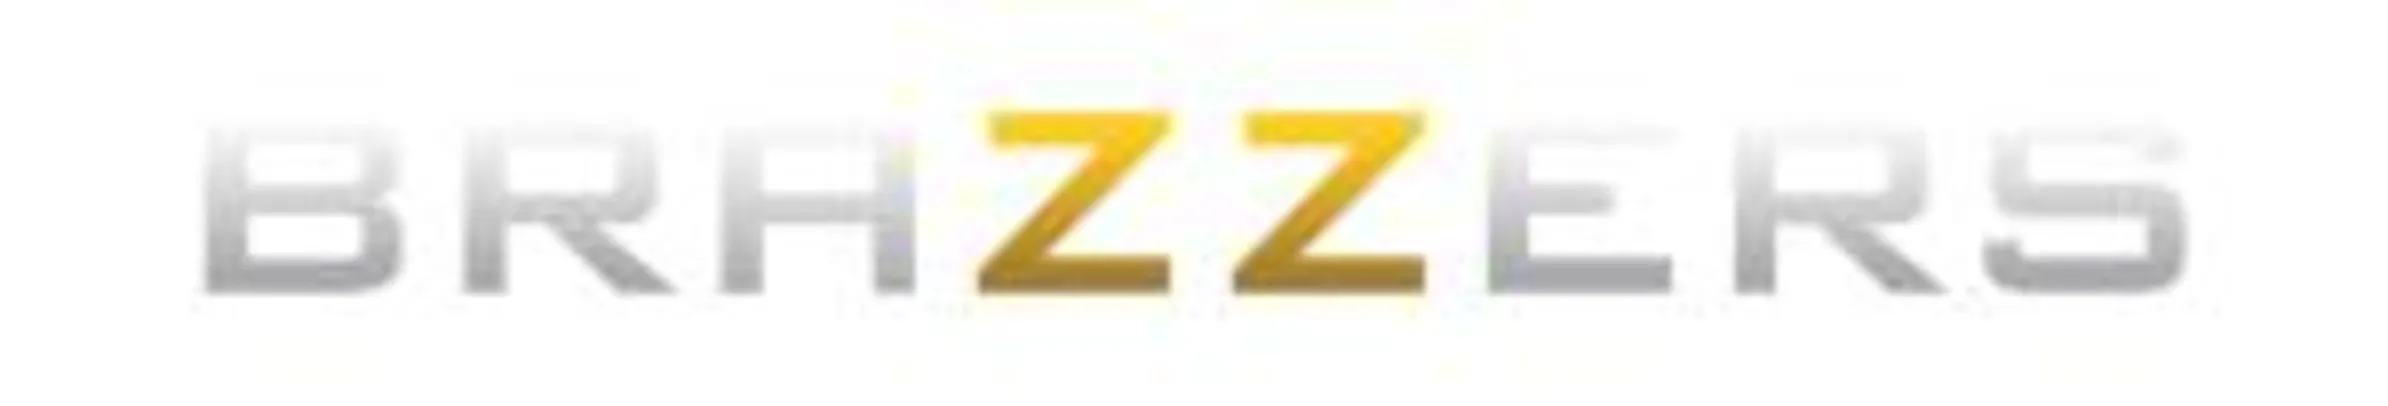 [+18] Brazzers - Adquira o plano anual e ganhe 6 meses grátis